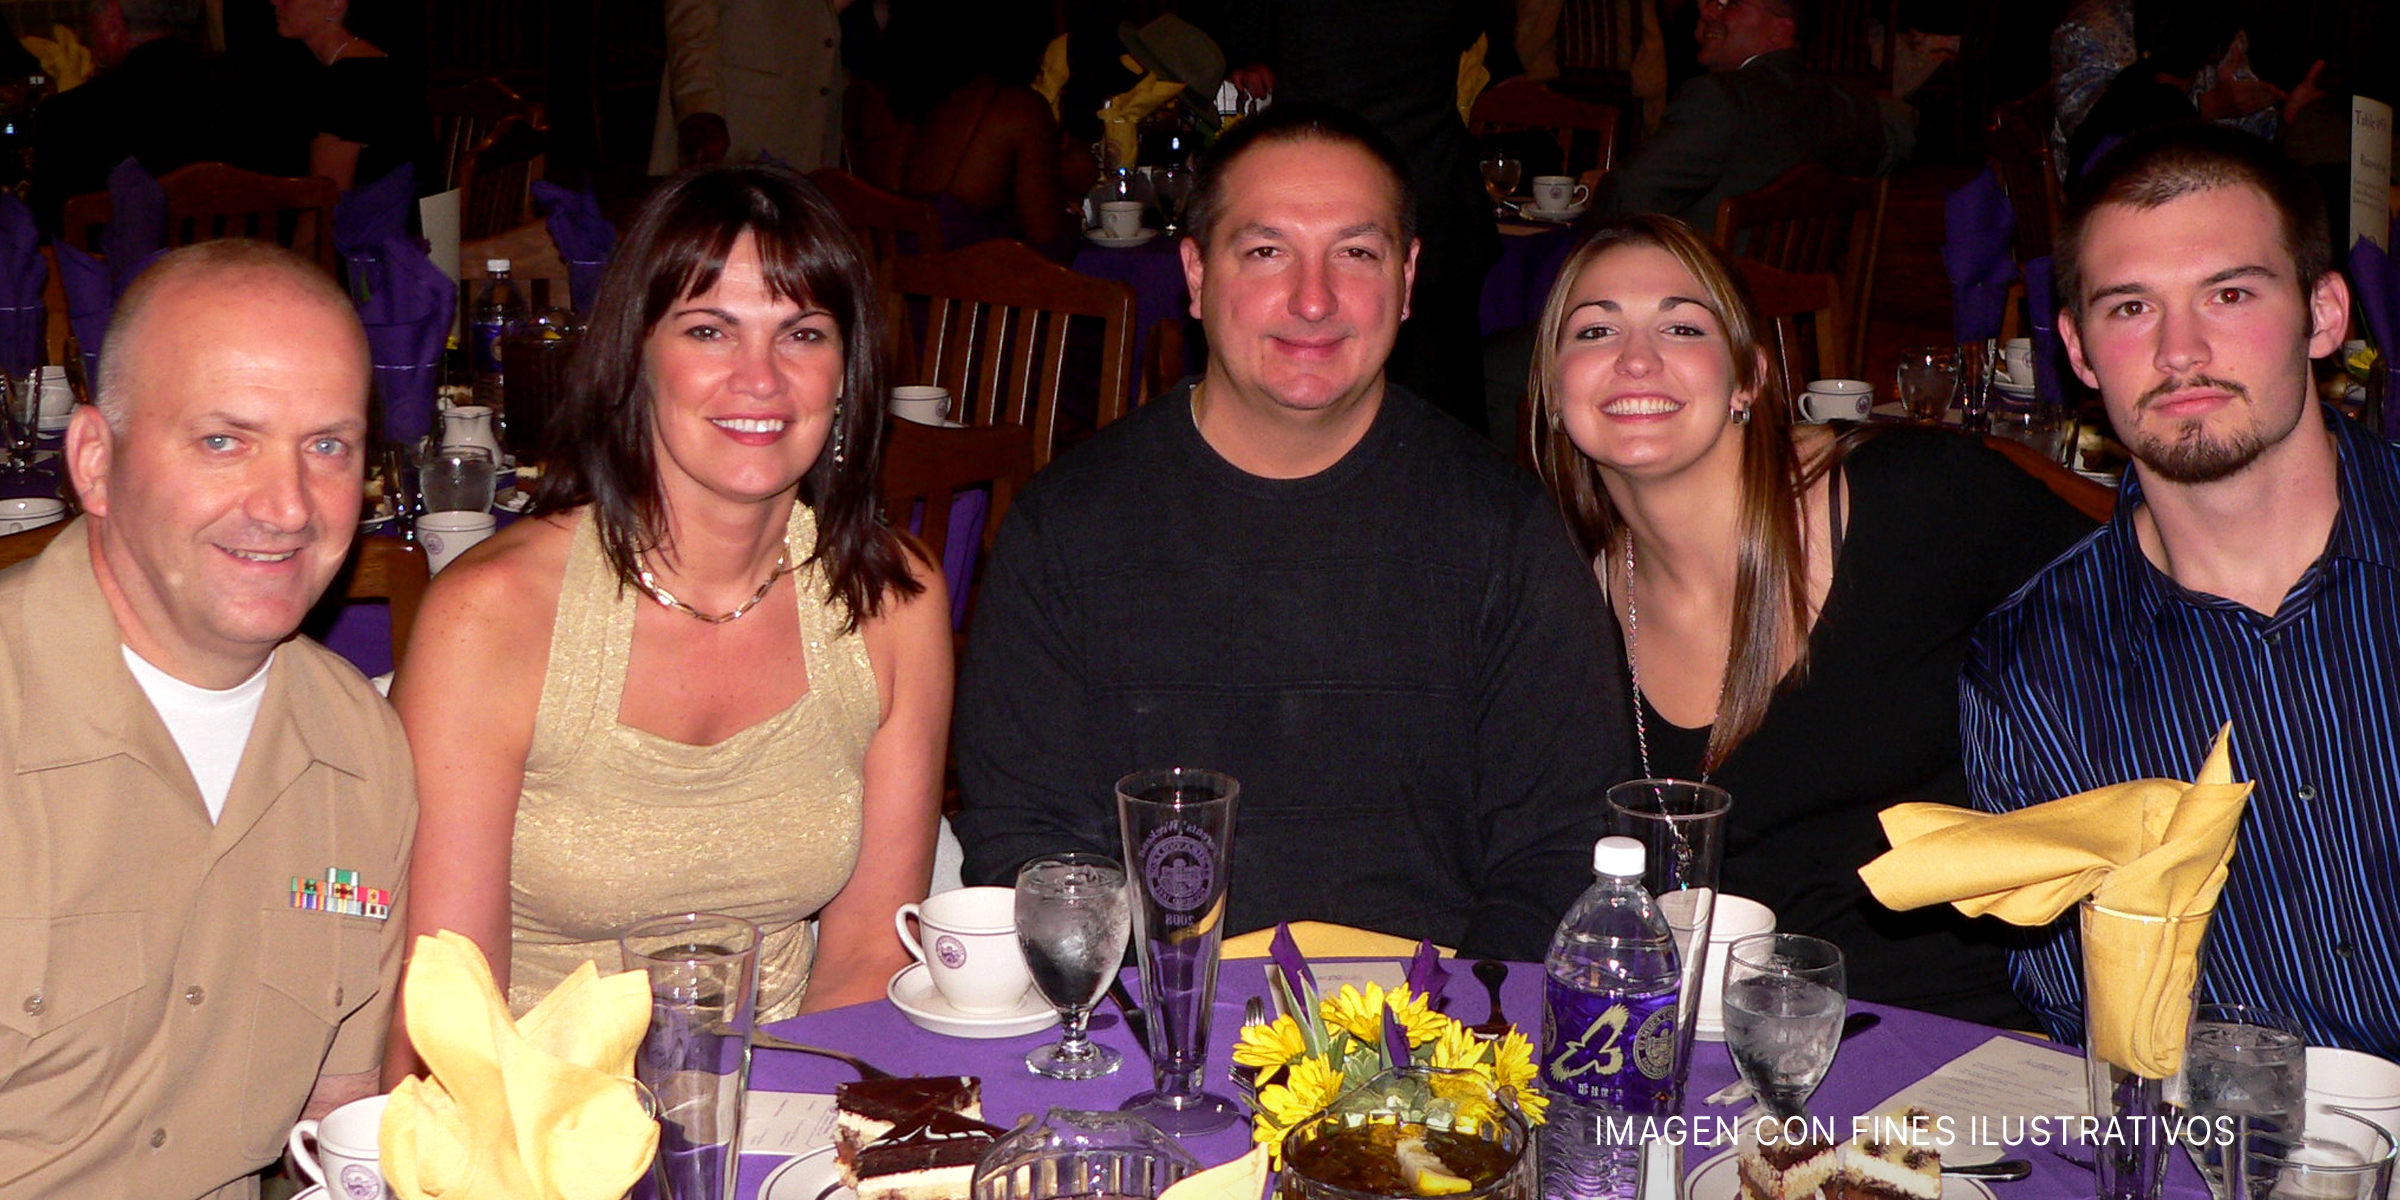 Gente reunida para cenar en familia en un restaurante | Foto: Flickr.com (CC BY 2.0)